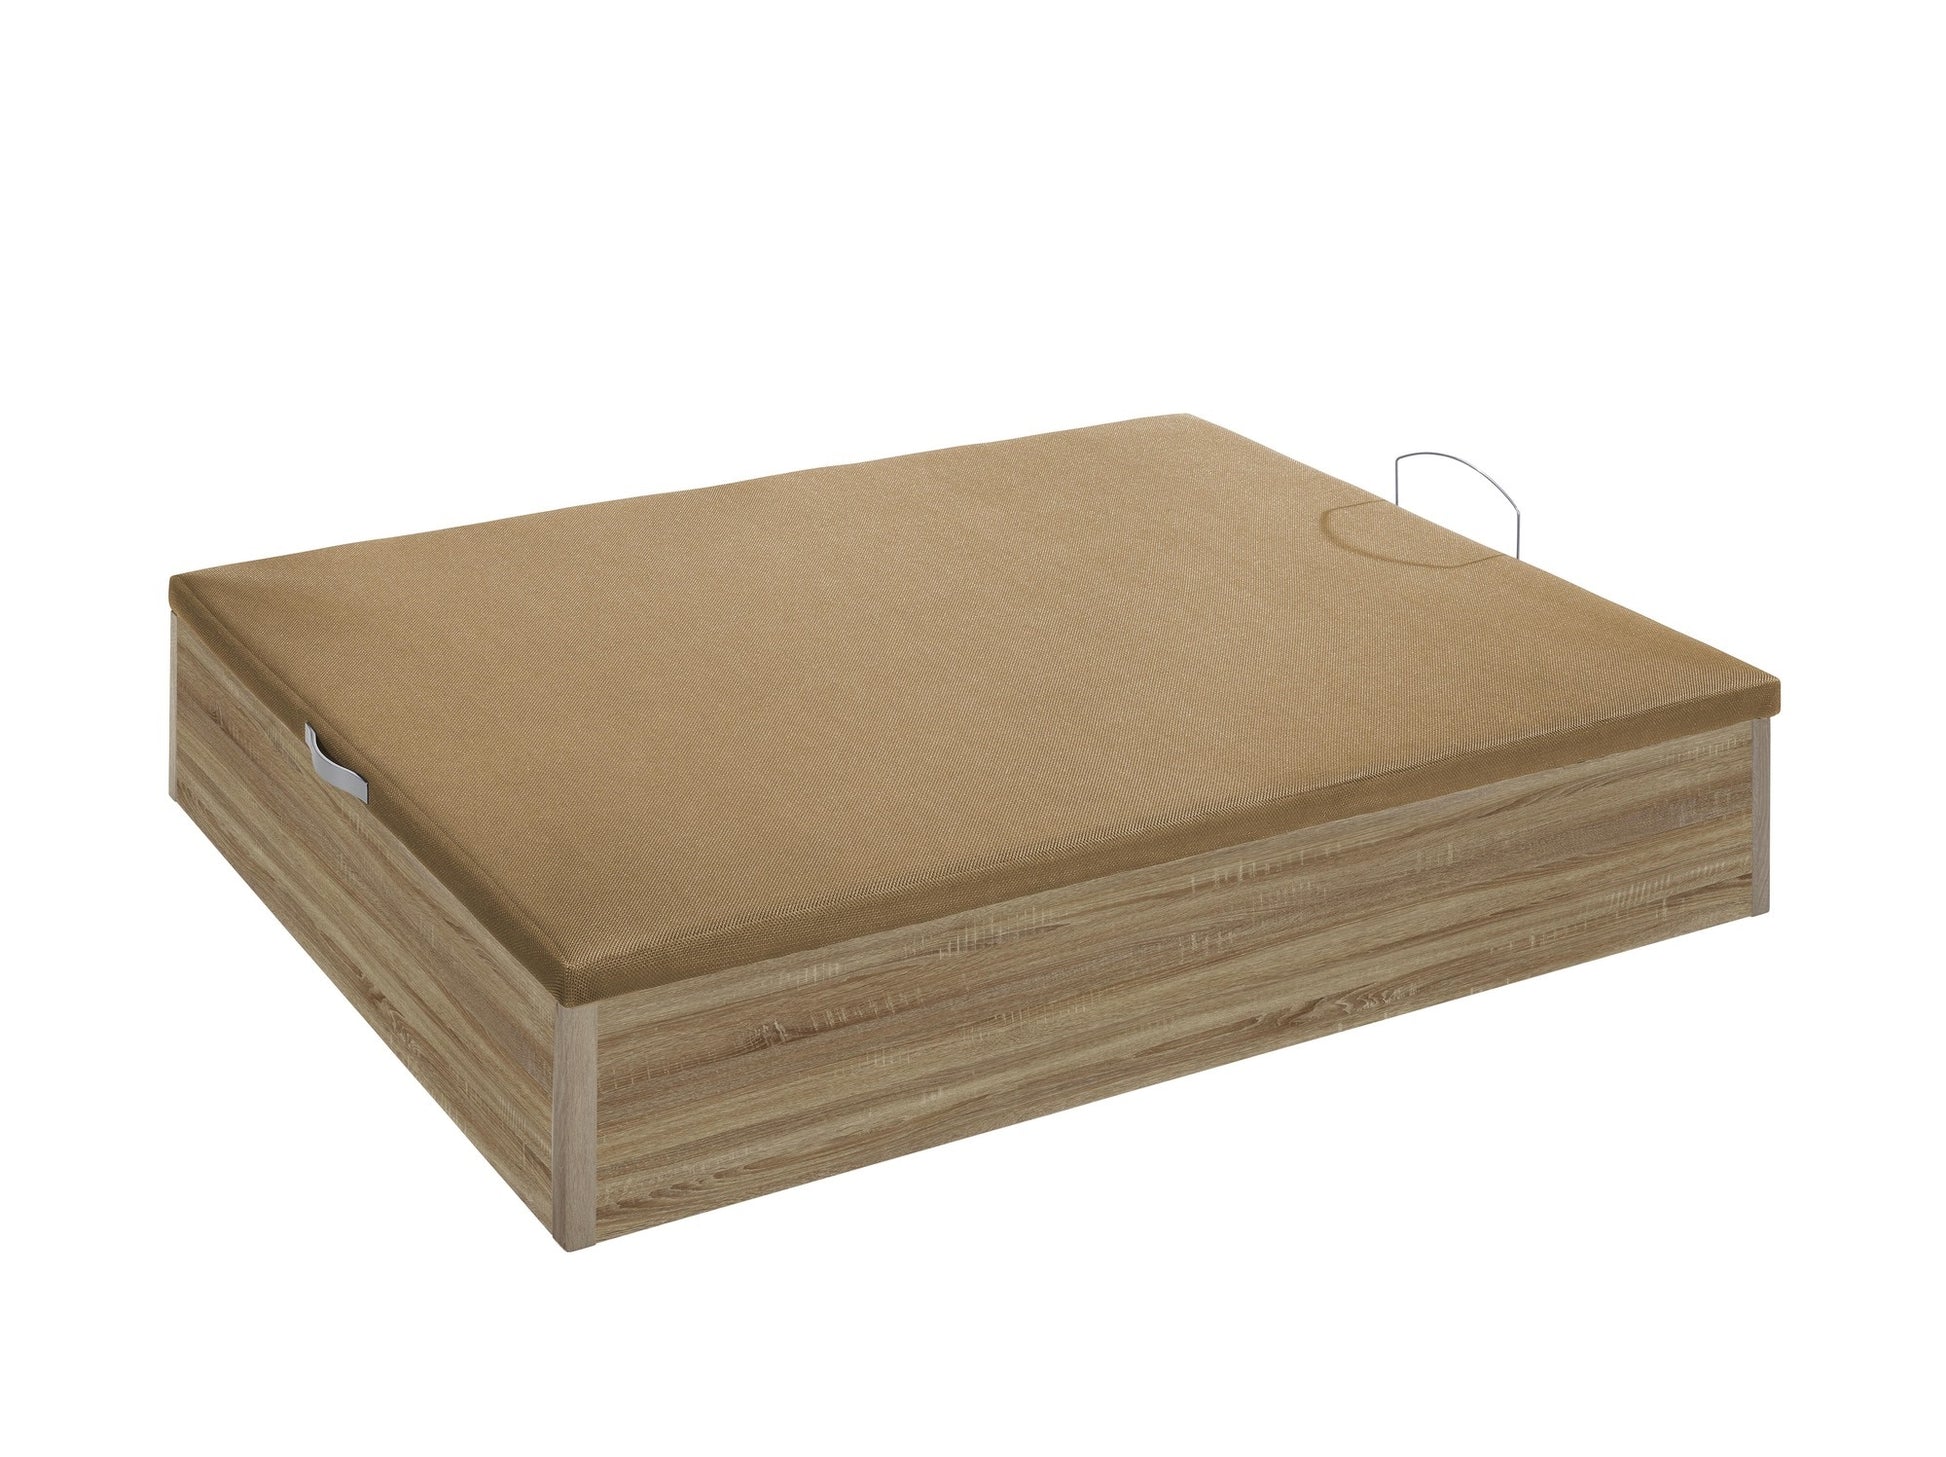 comprar canape de madera de buena calidad - canape de madera 180x190cm